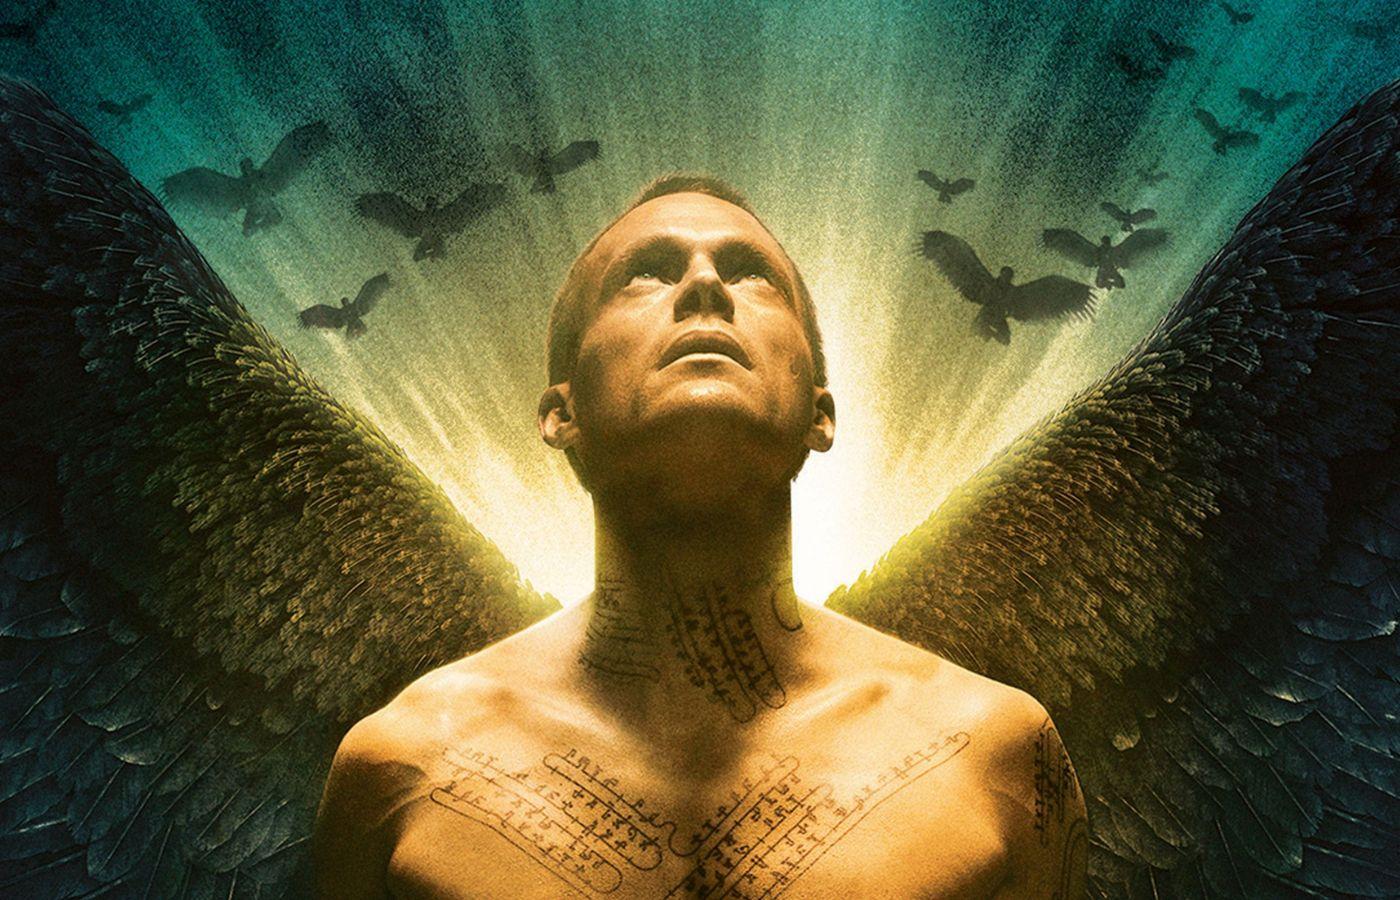 Paul Bettany film Legion is now on Netflix.